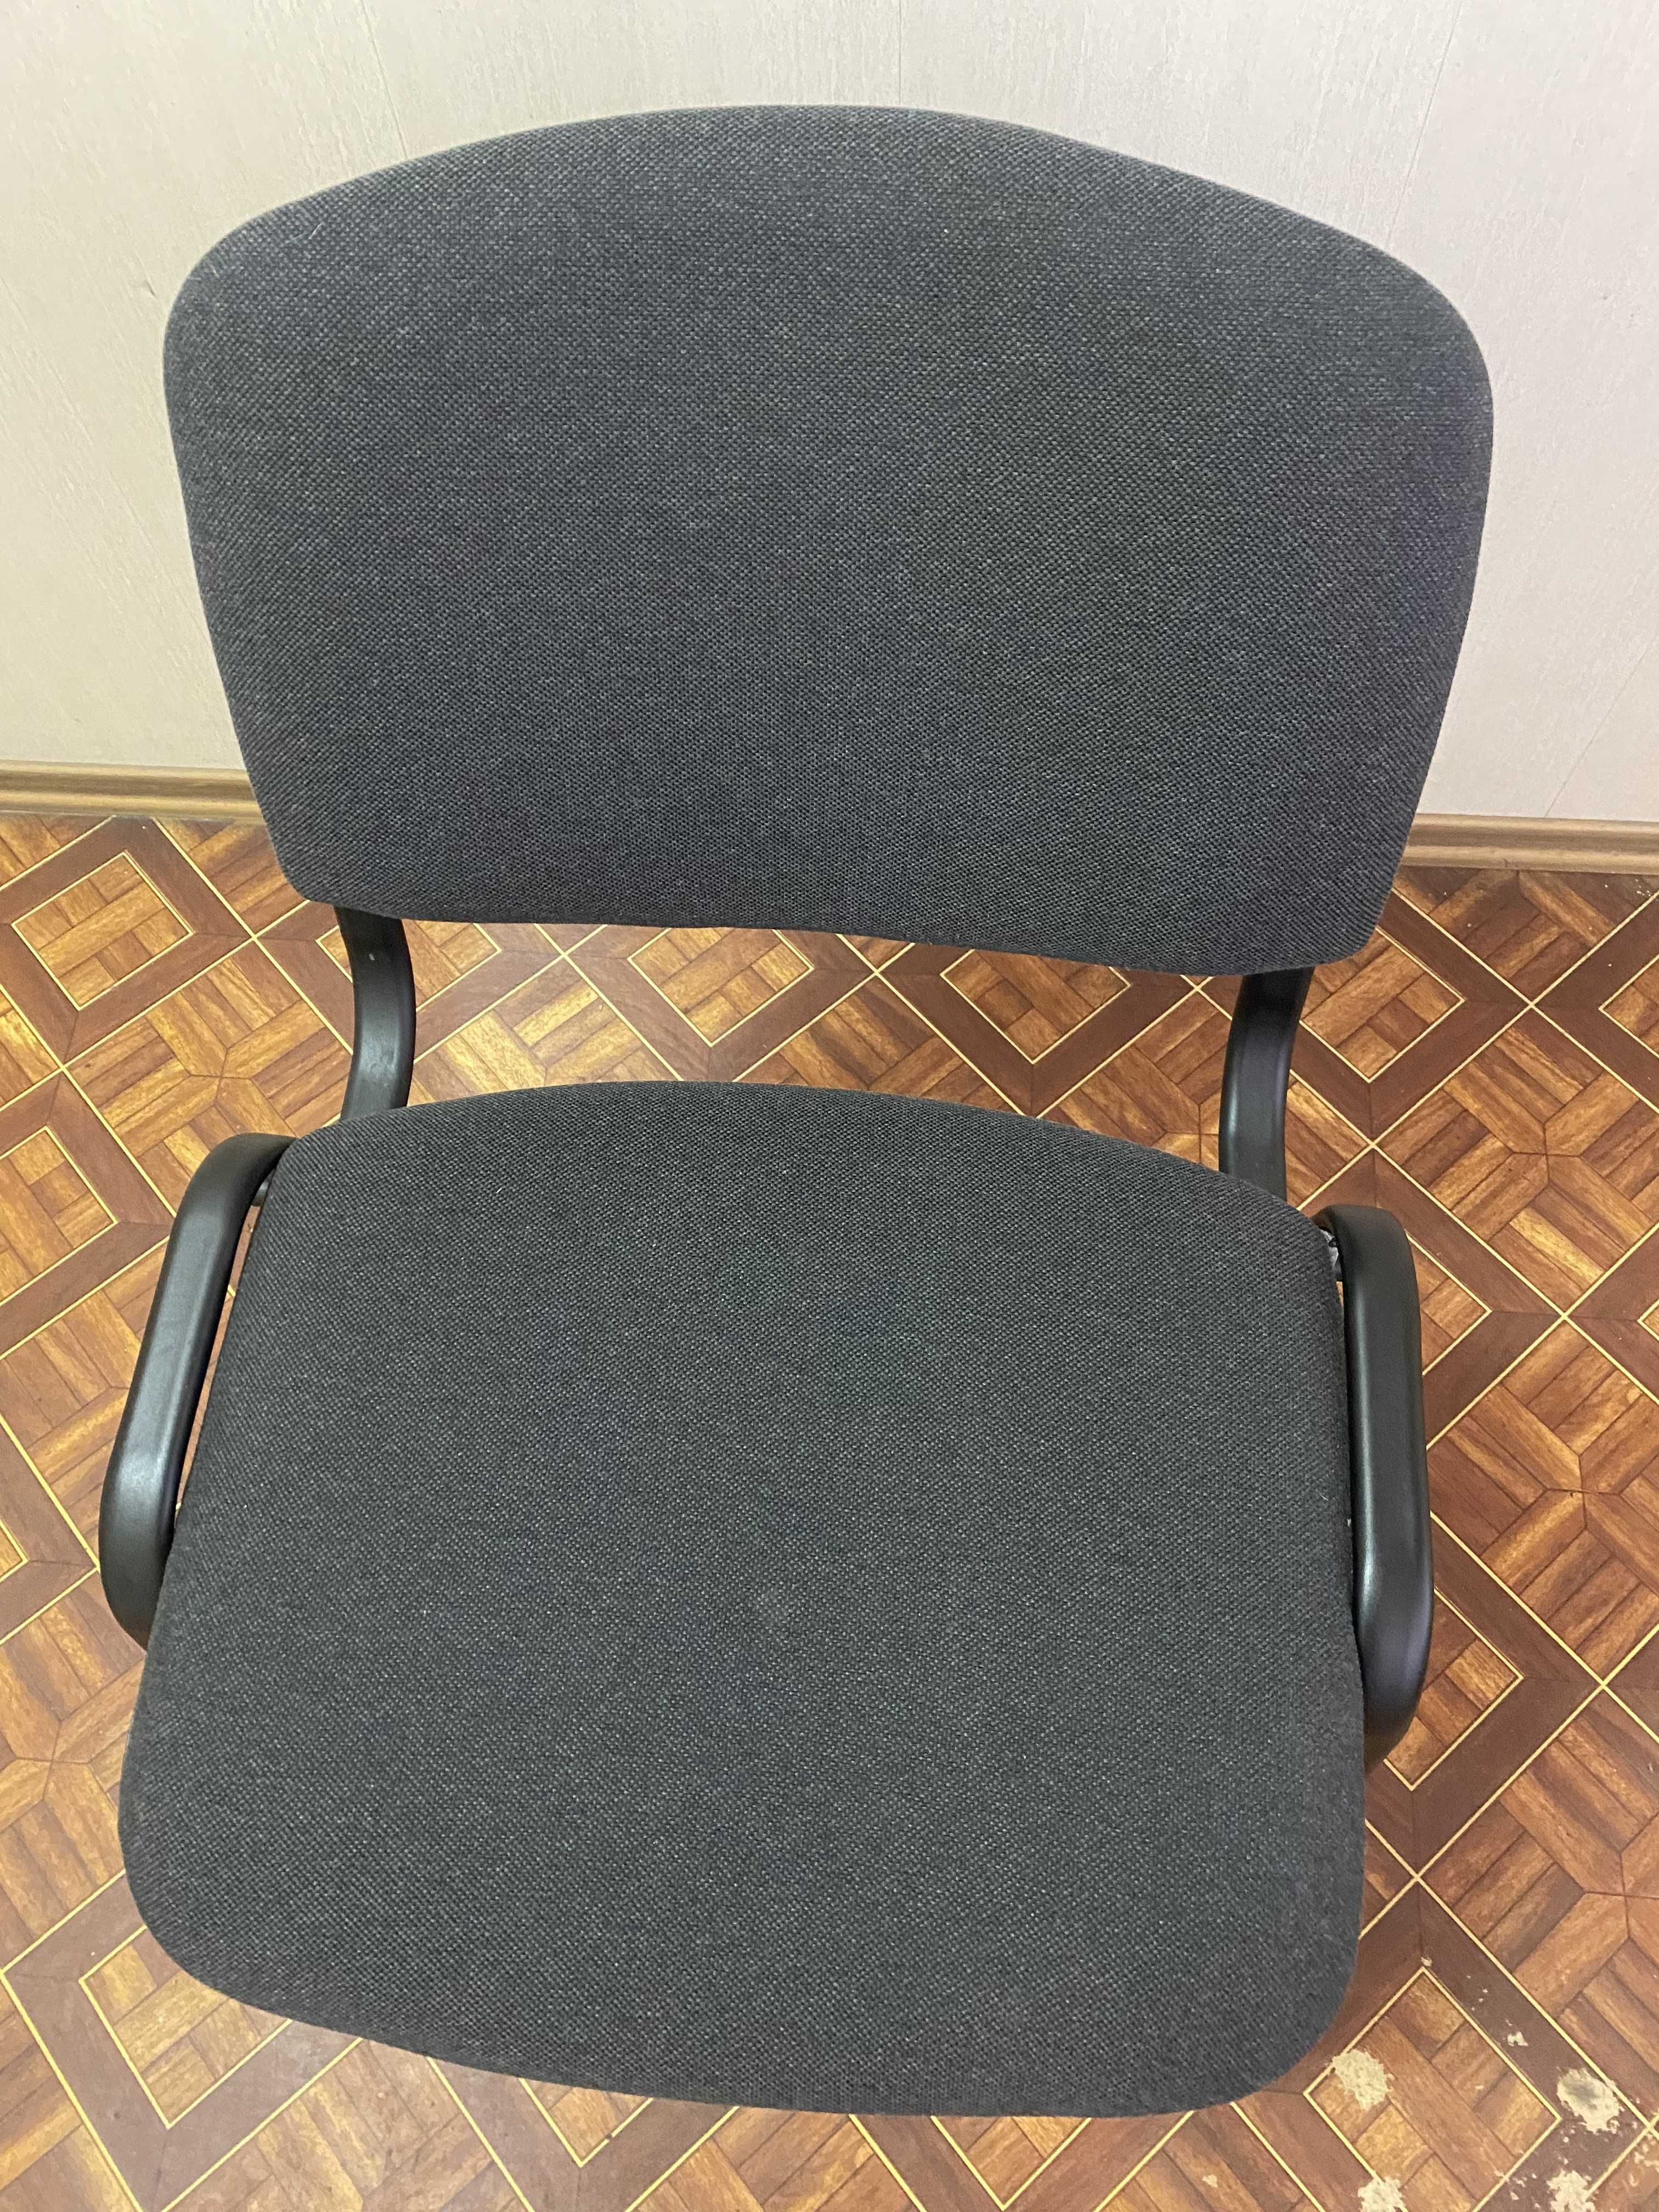 Продам стулья офисные модель Ізо в хорошем состоянии